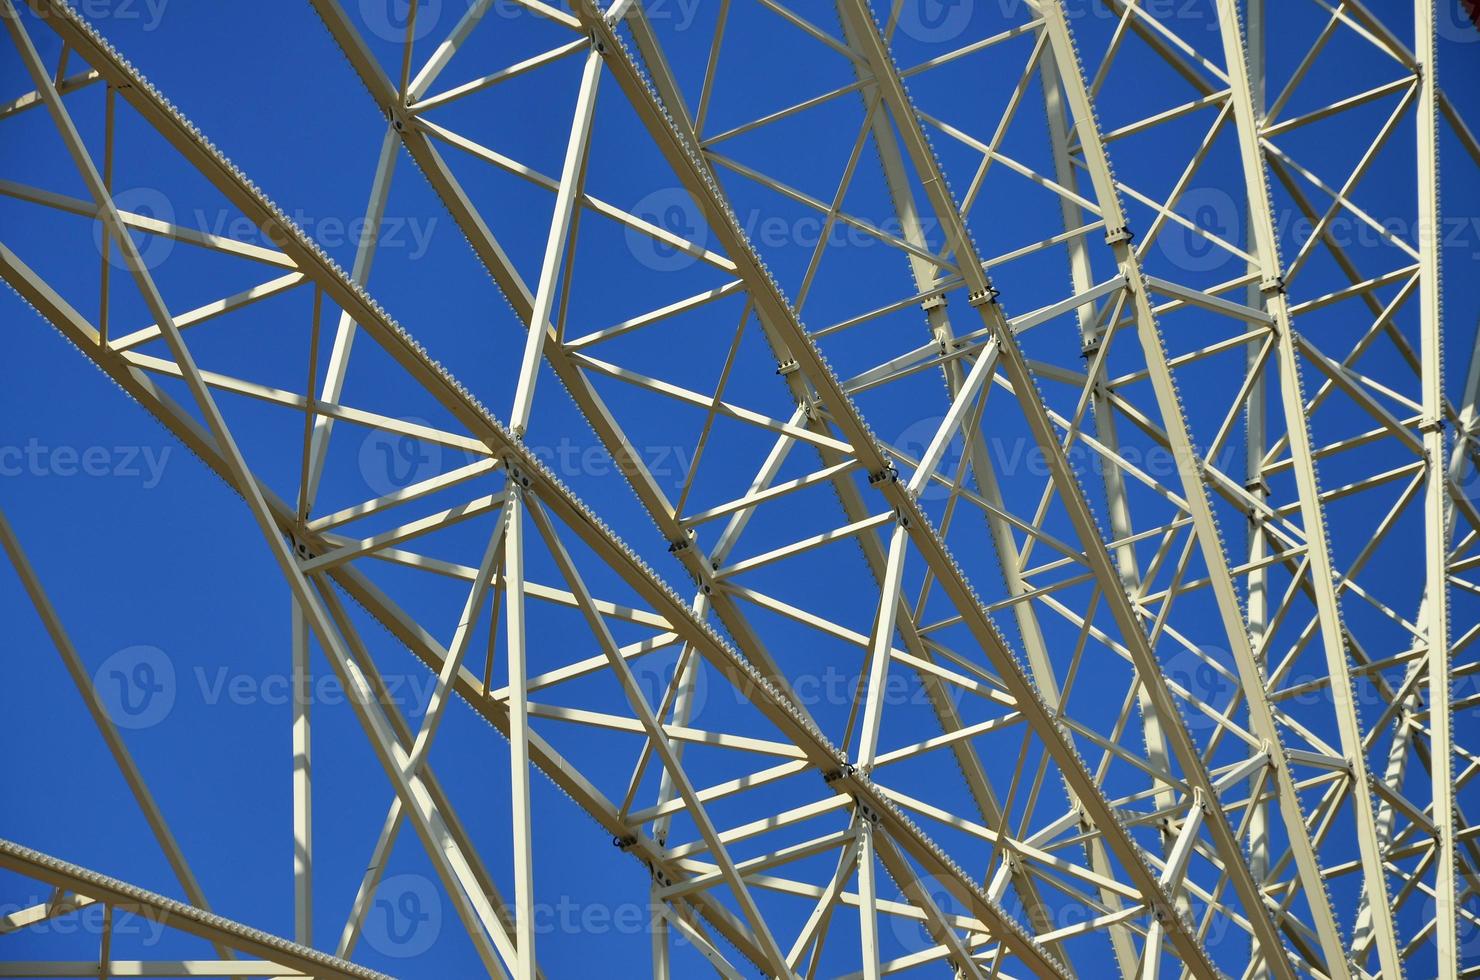 detalhes estruturais de uma roda gigante em um parque de diversões foto